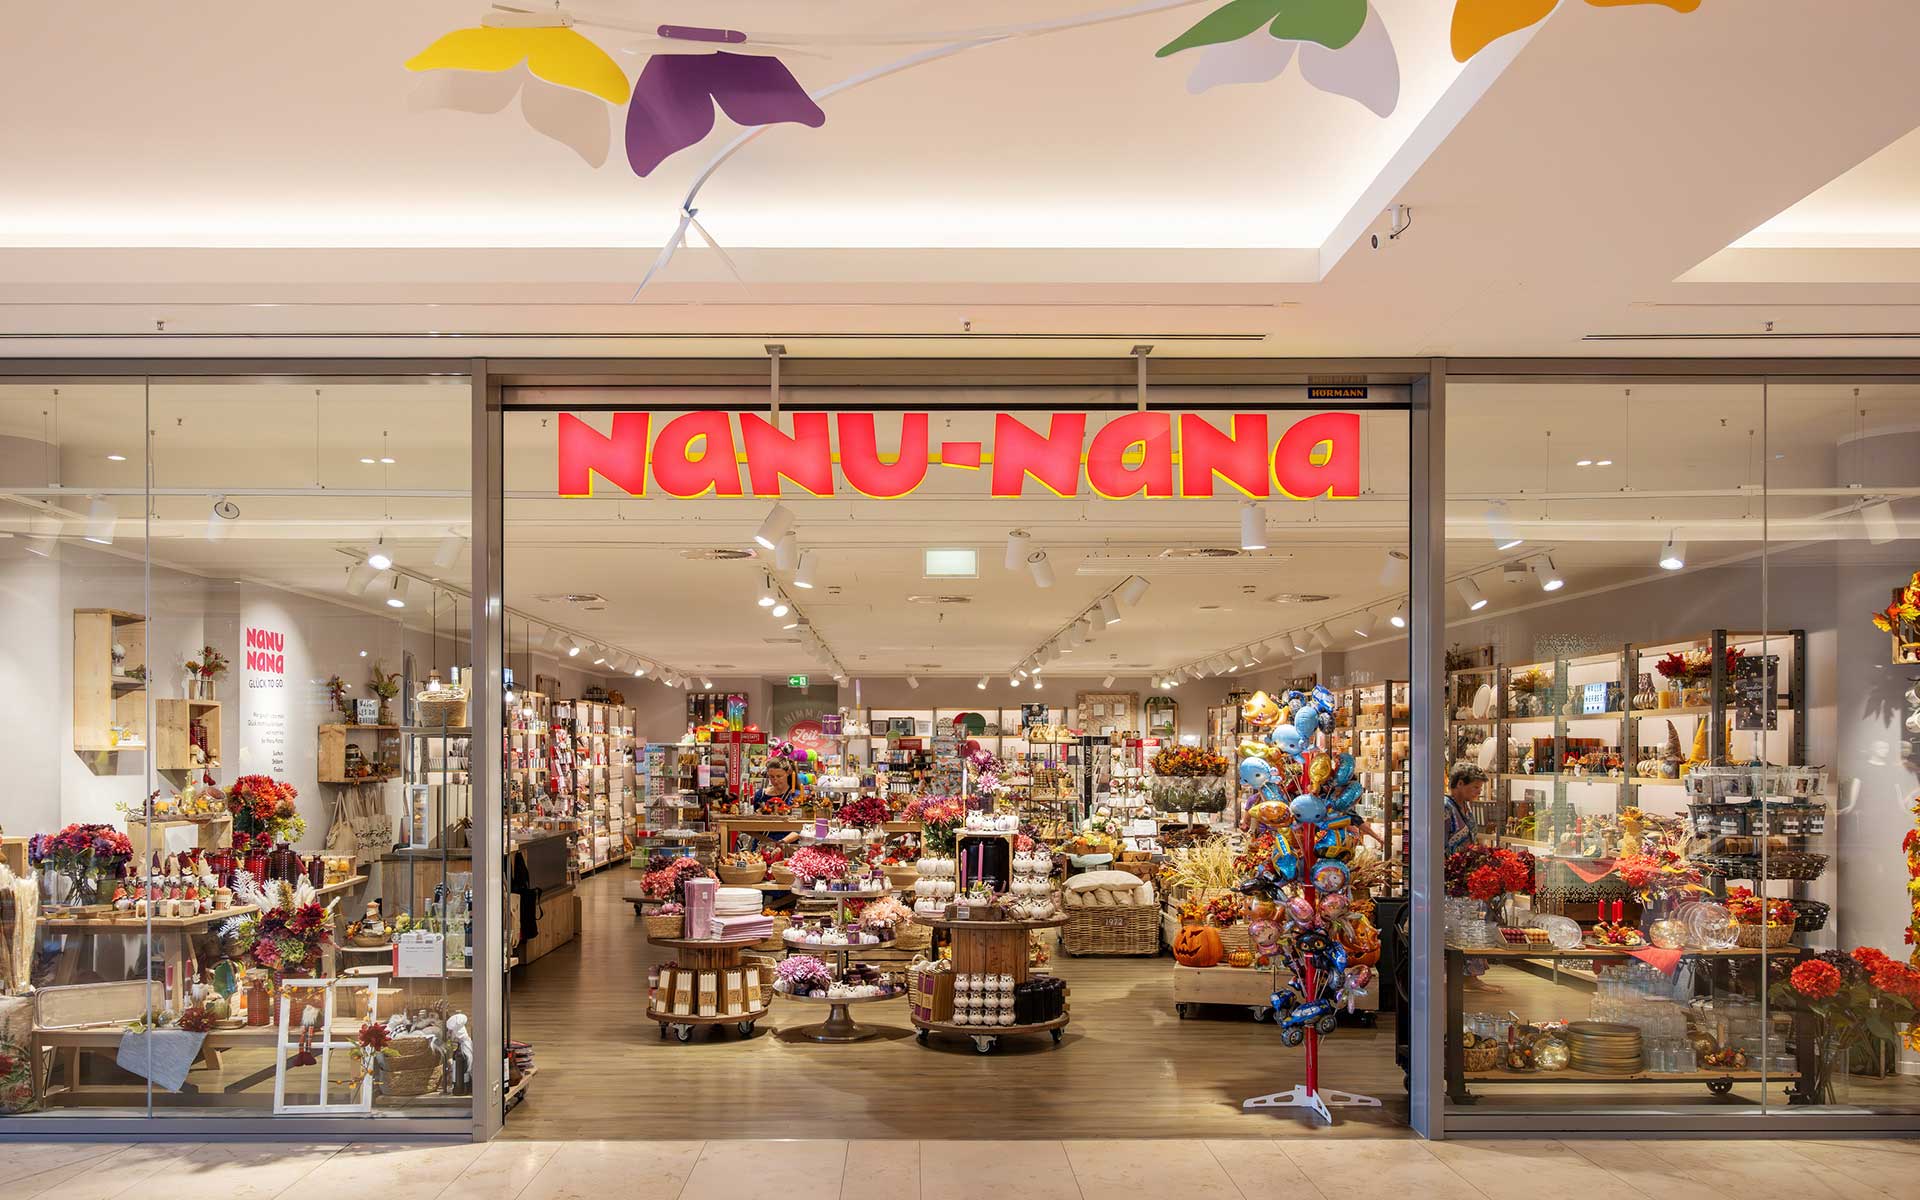 Nanu-Nana Geschäft von außen